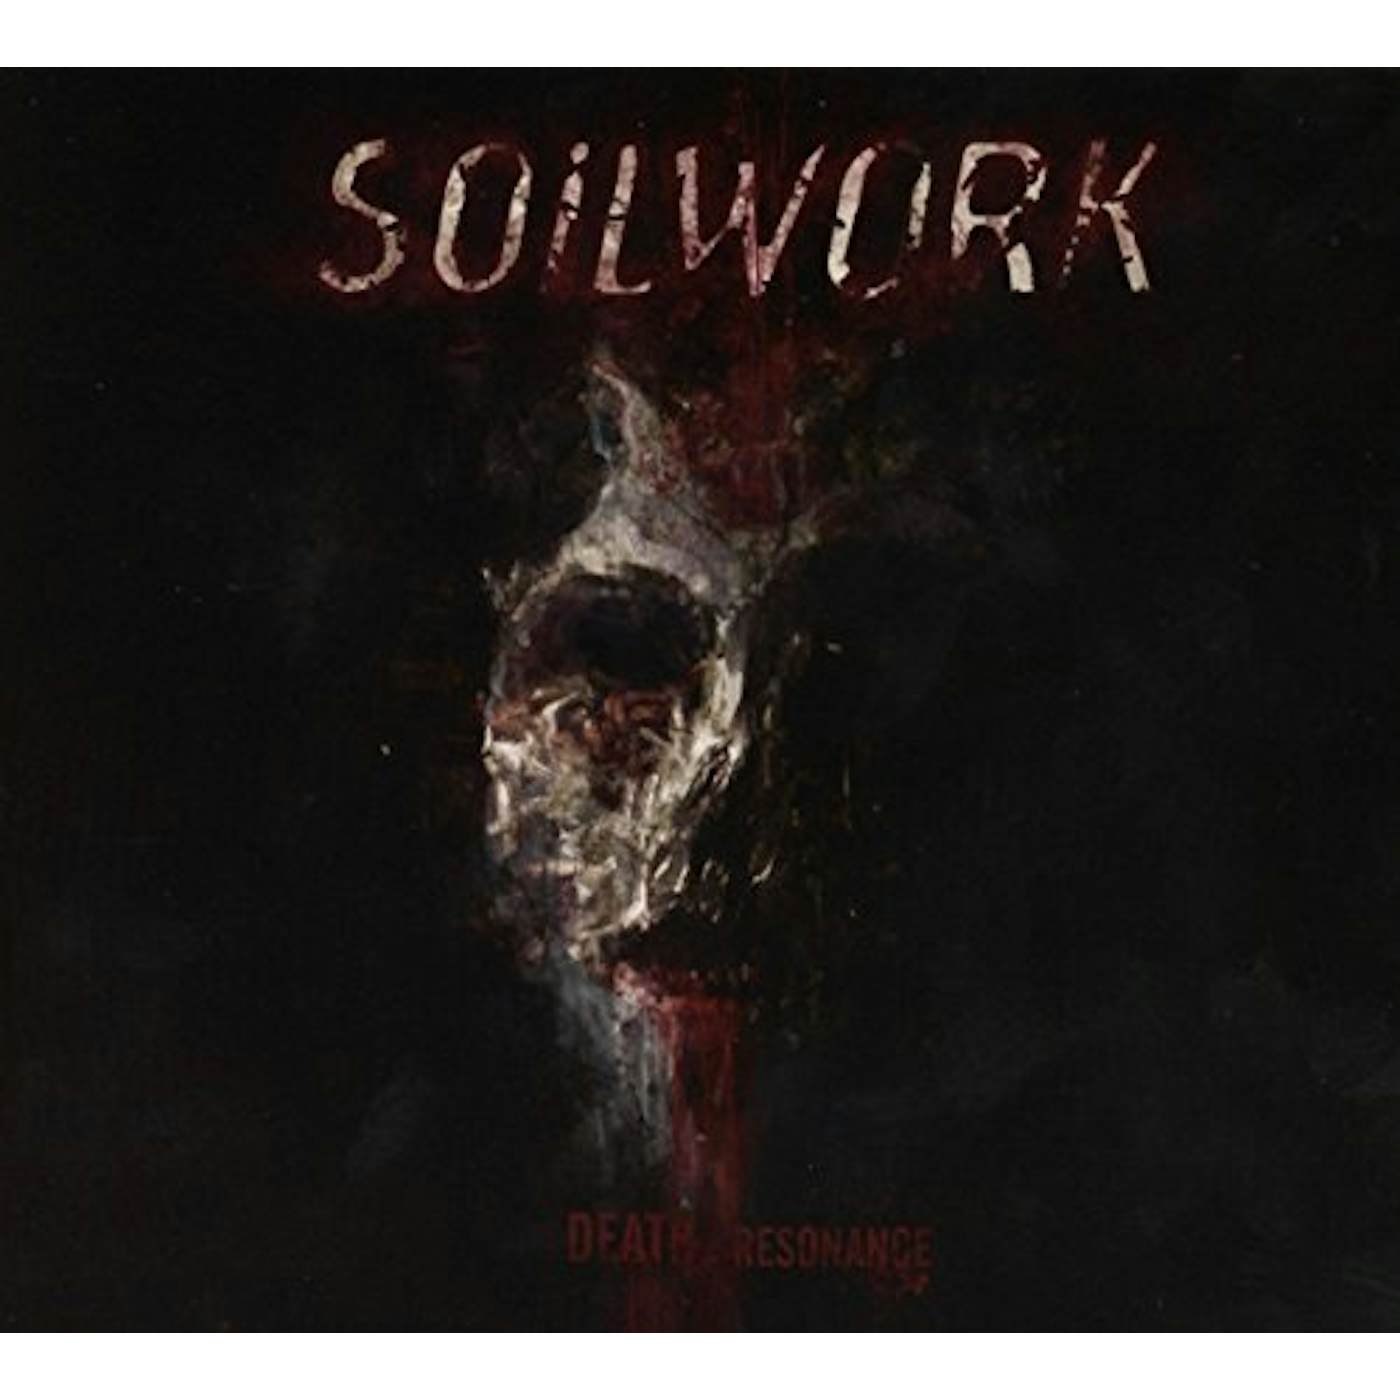 Soilwork DEATH RESONANCE CD